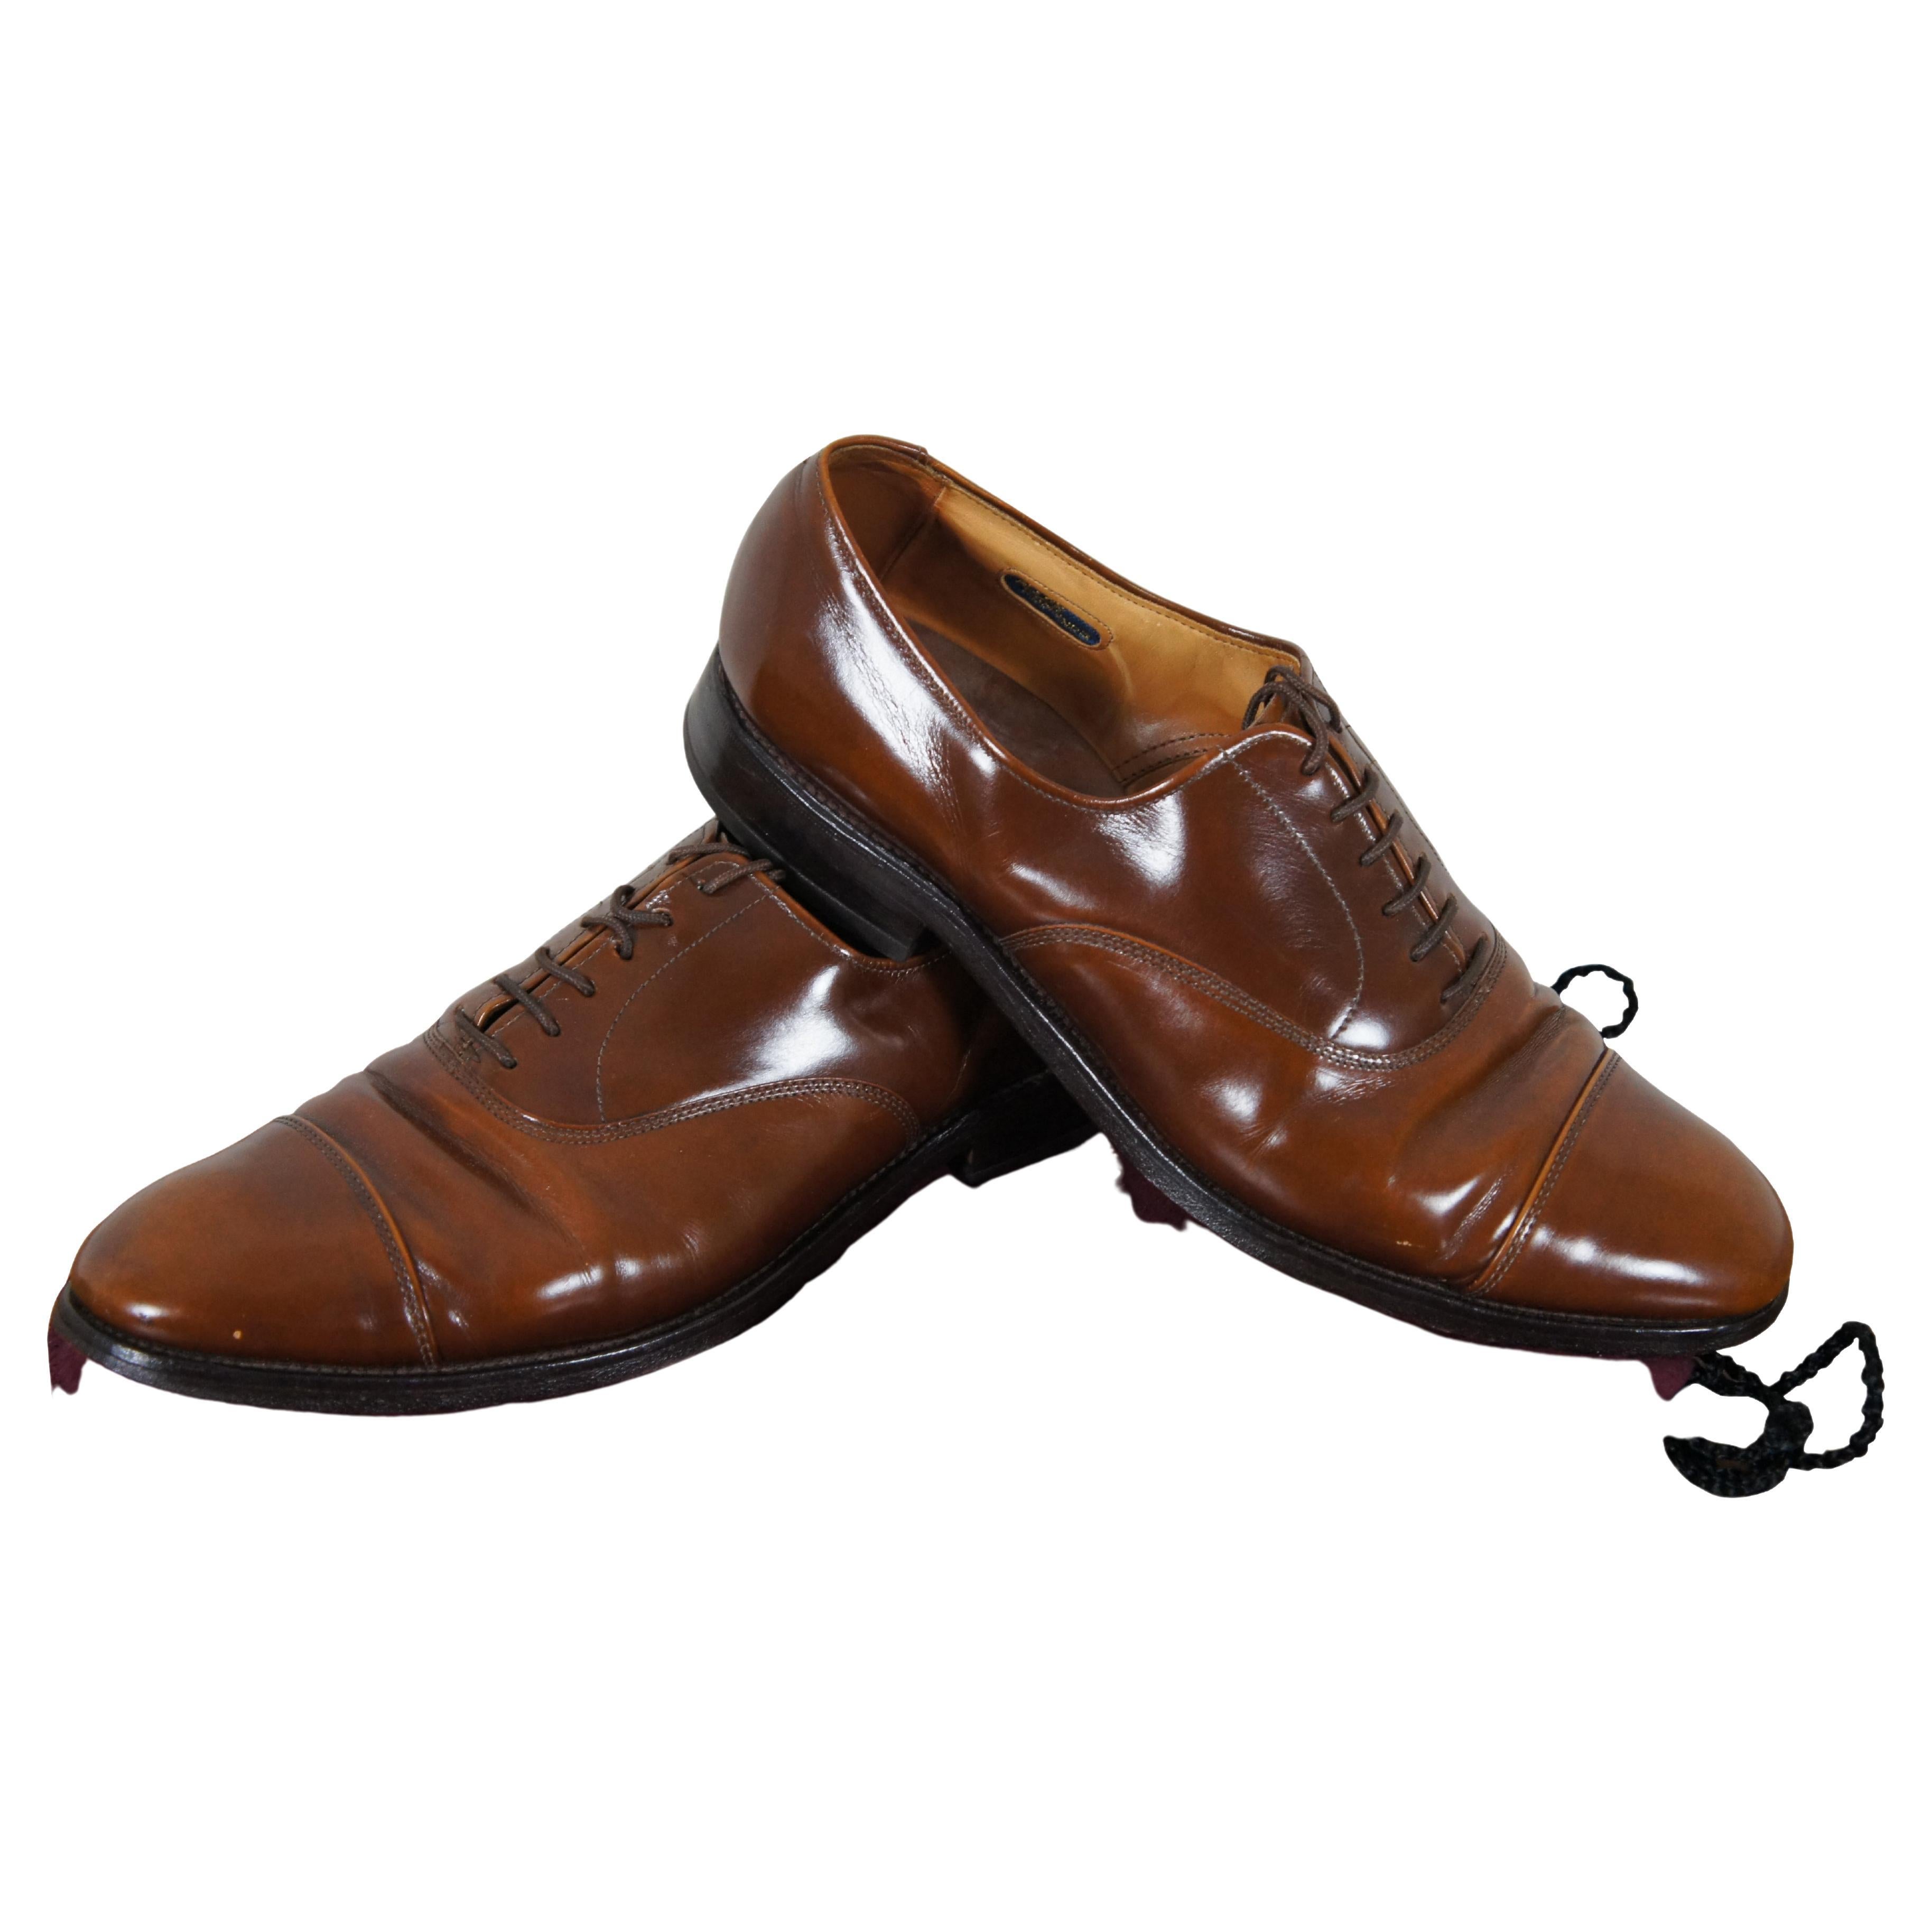 Vintage Allen Edmonds Park Avenue Walnut Brown Cap Toe Oxford Dress Shoes For Sale